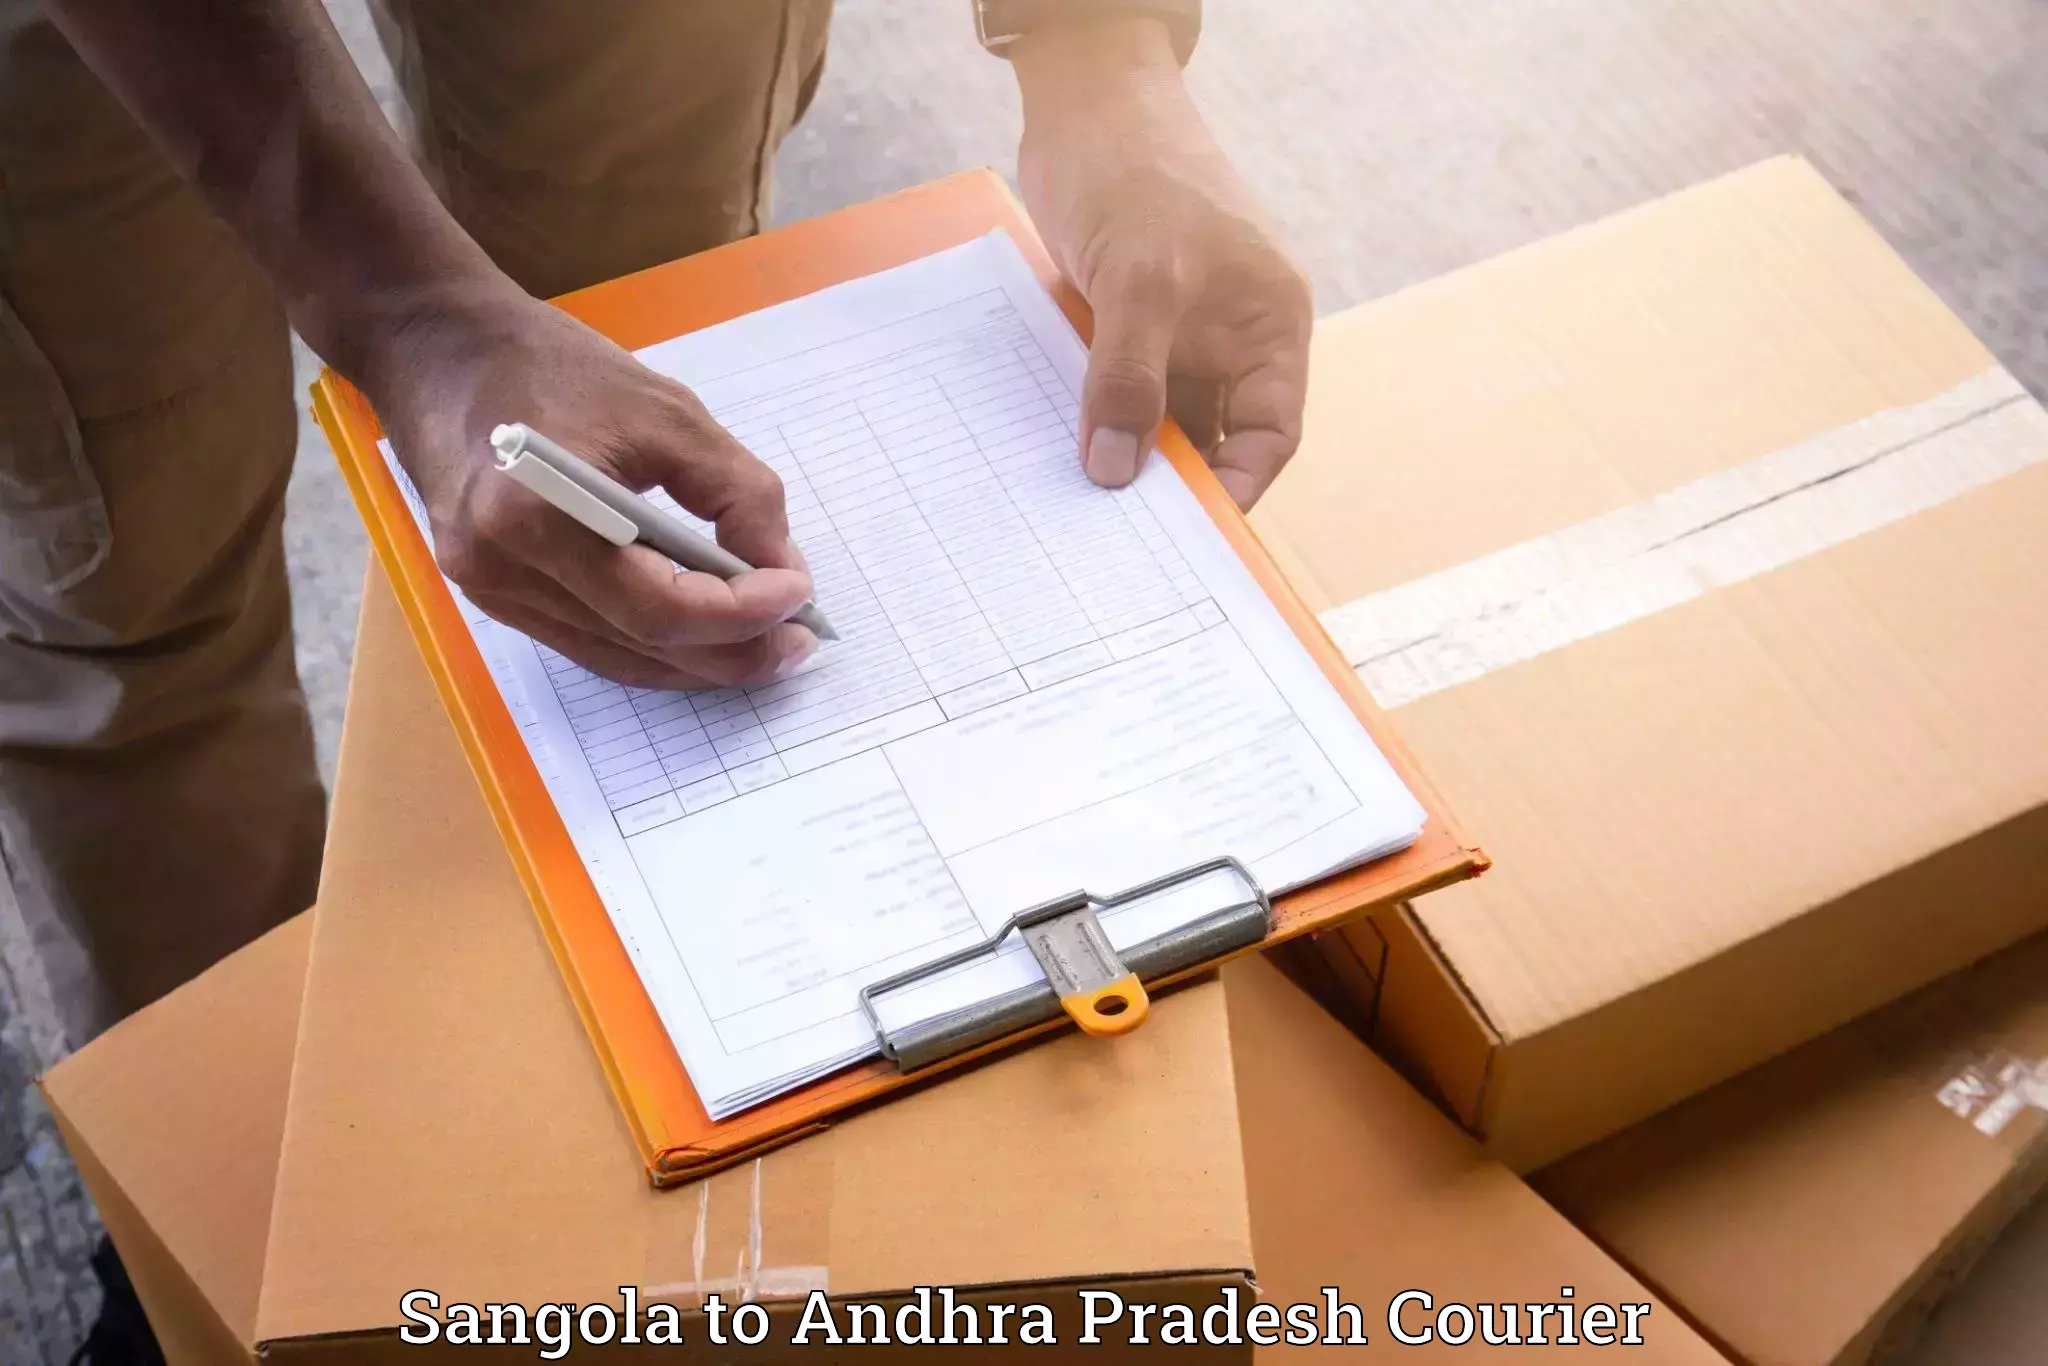 Professional furniture movers Sangola to Allagadda